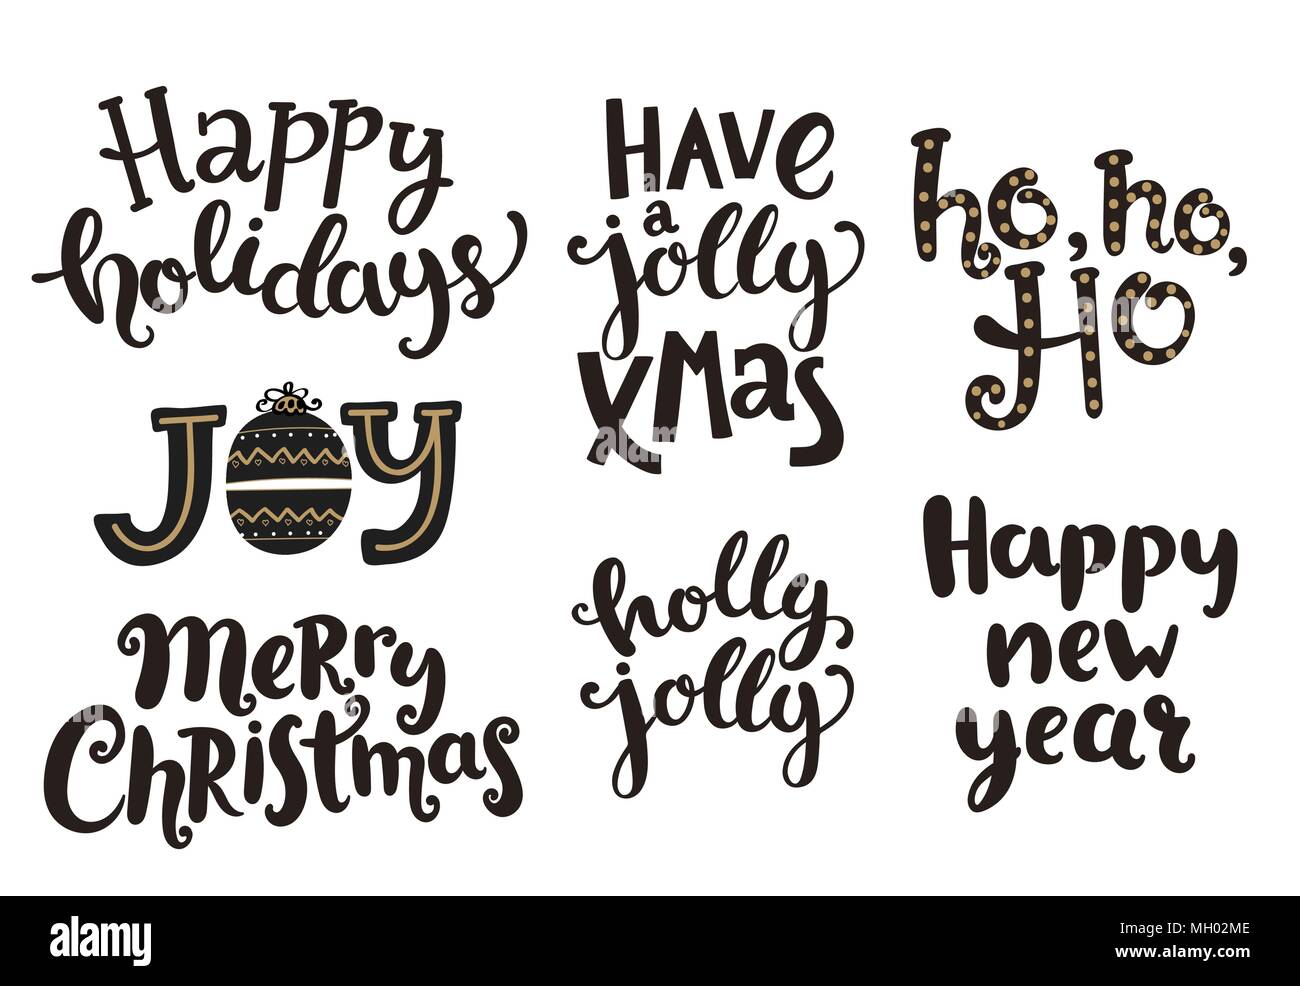 Frasi Natale Musica.Vacanze Scritte Frasi Per Capodanno E Natale Illustrazione Vettoriale Immagine E Vettoriale Alamy